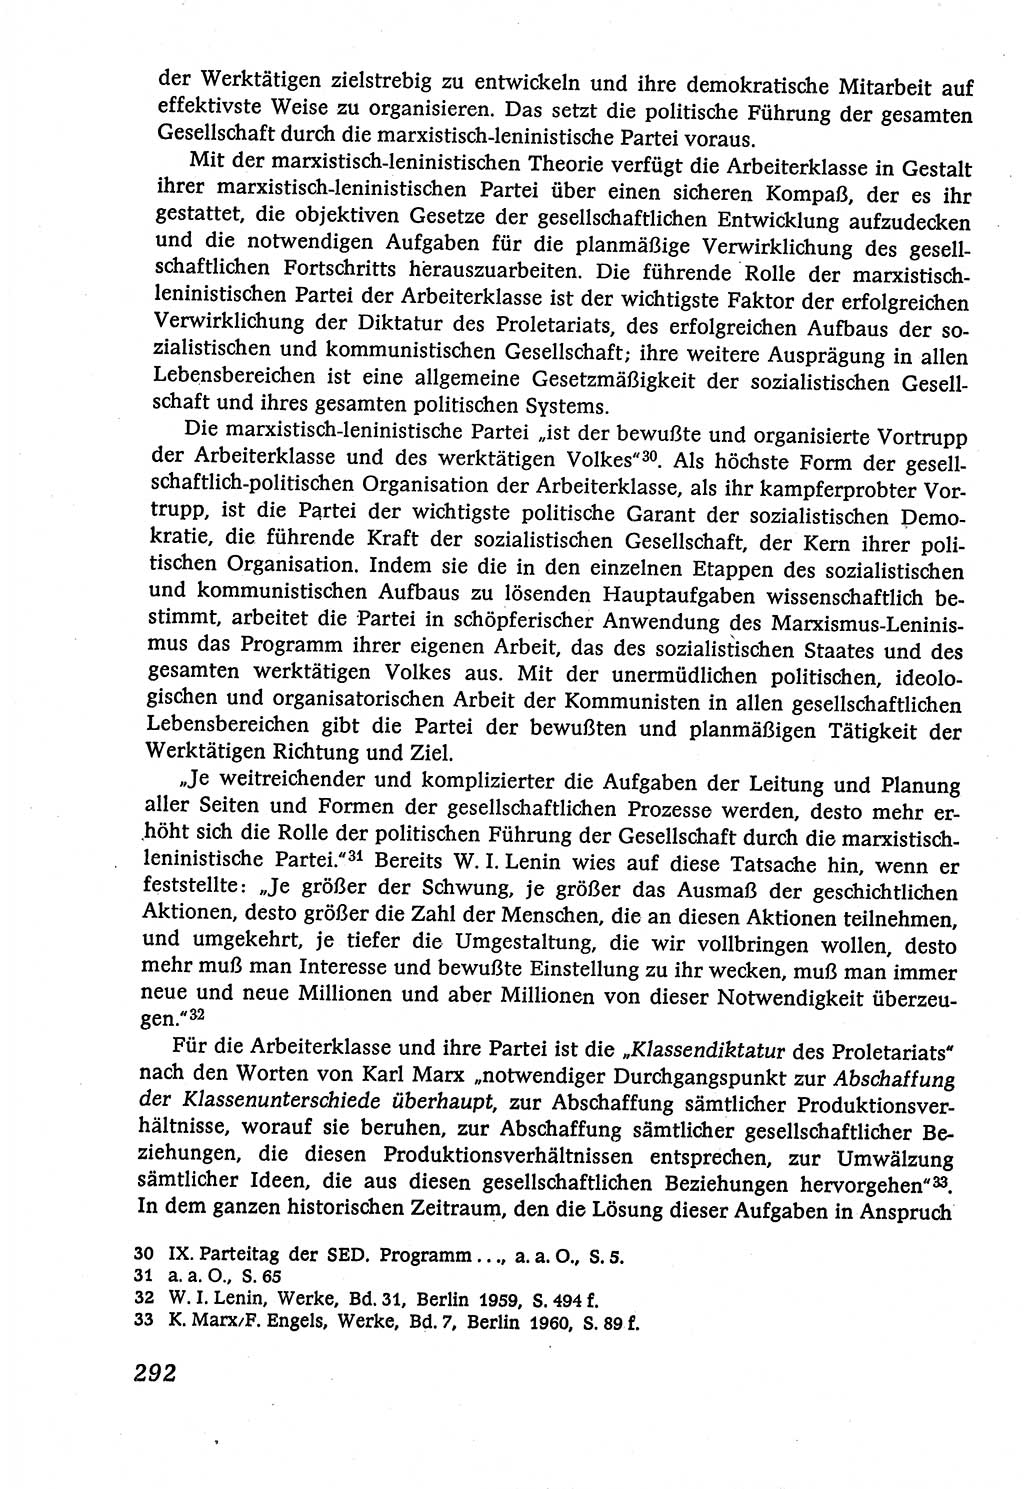 Marxistisch-leninistische (ML) Staats- und Rechtstheorie [Deutsche Demokratische Republik (DDR)], Lehrbuch 1980, Seite 292 (ML St.-R.-Th. DDR Lb. 1980, S. 292)